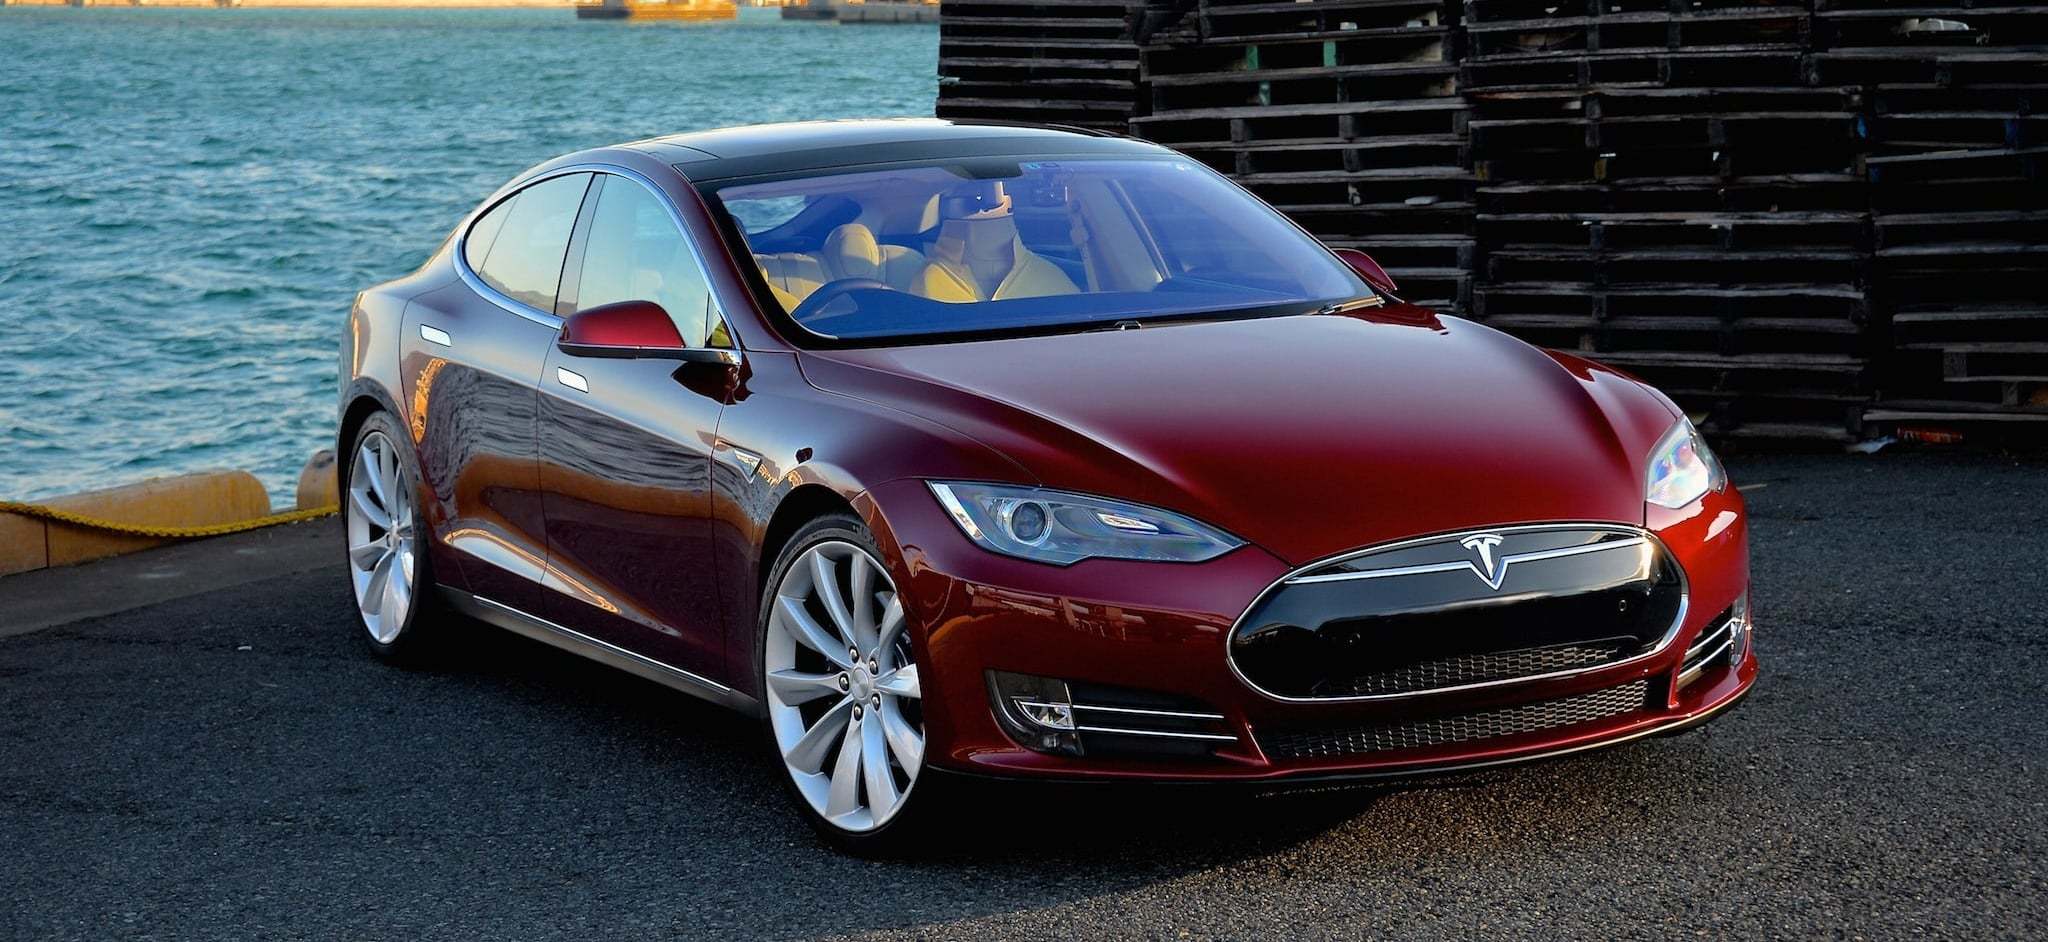 Will Tesla Survive Elon Musk’s ‘Departure’?